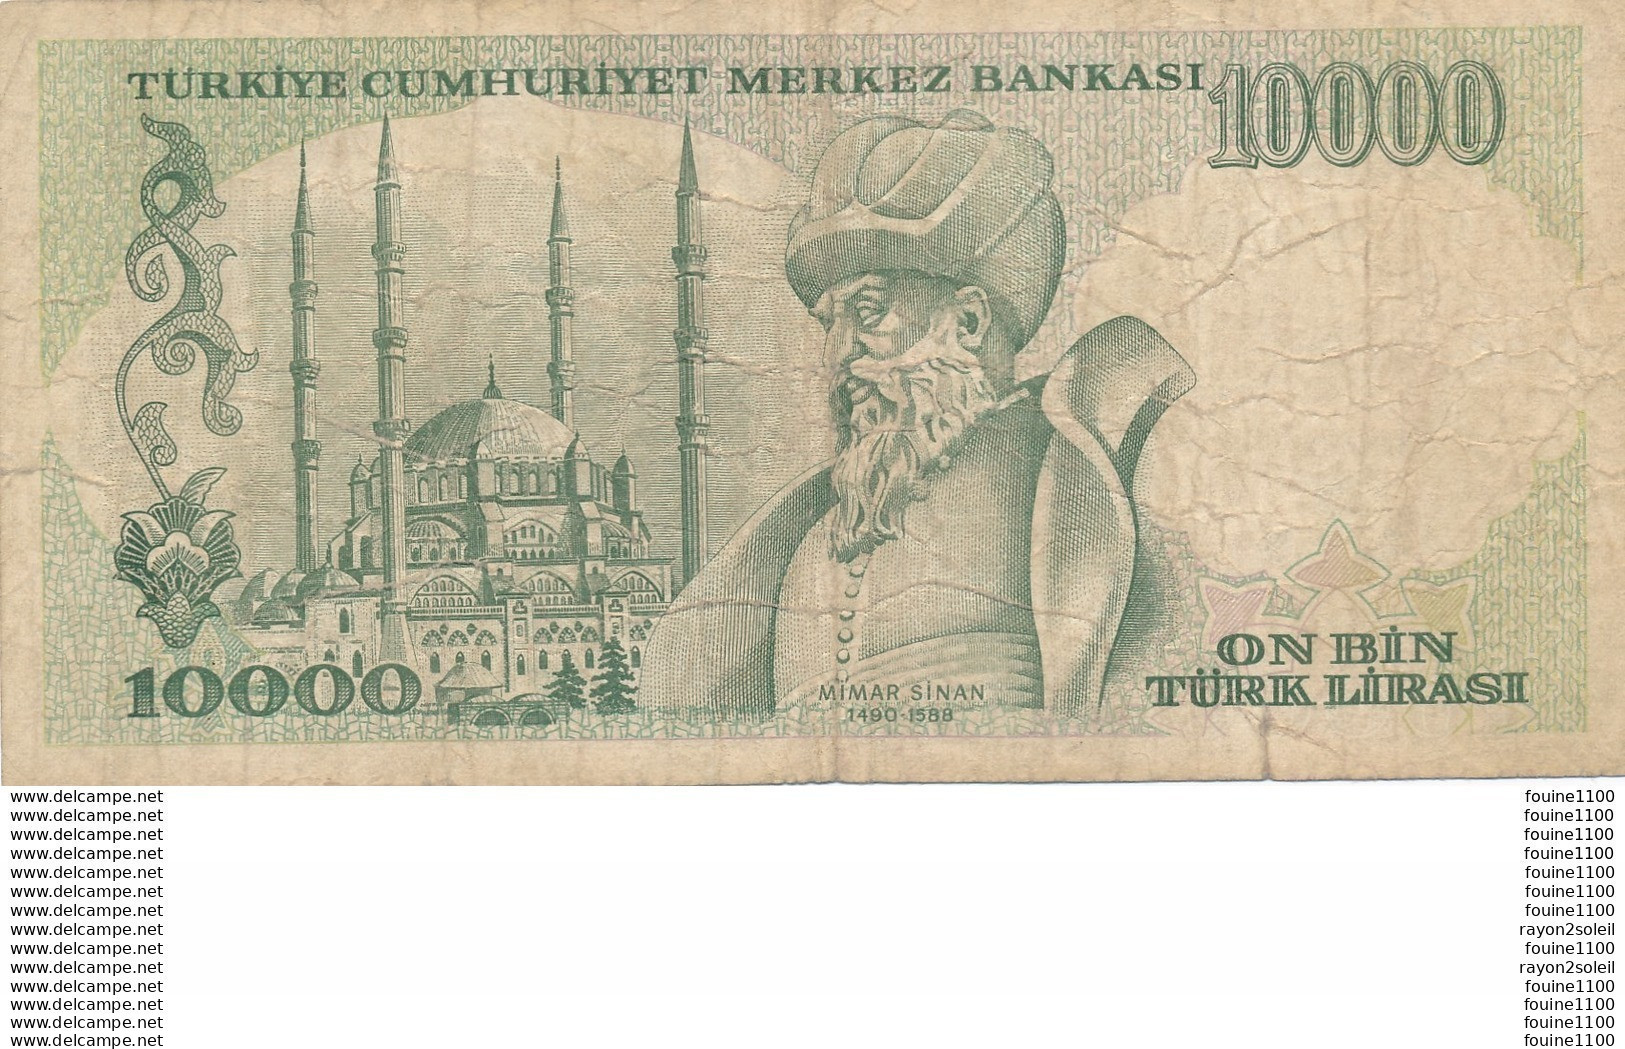 Billet  De Banque Turquie  Turkiye  10000 Turk Lirasi - Turquie